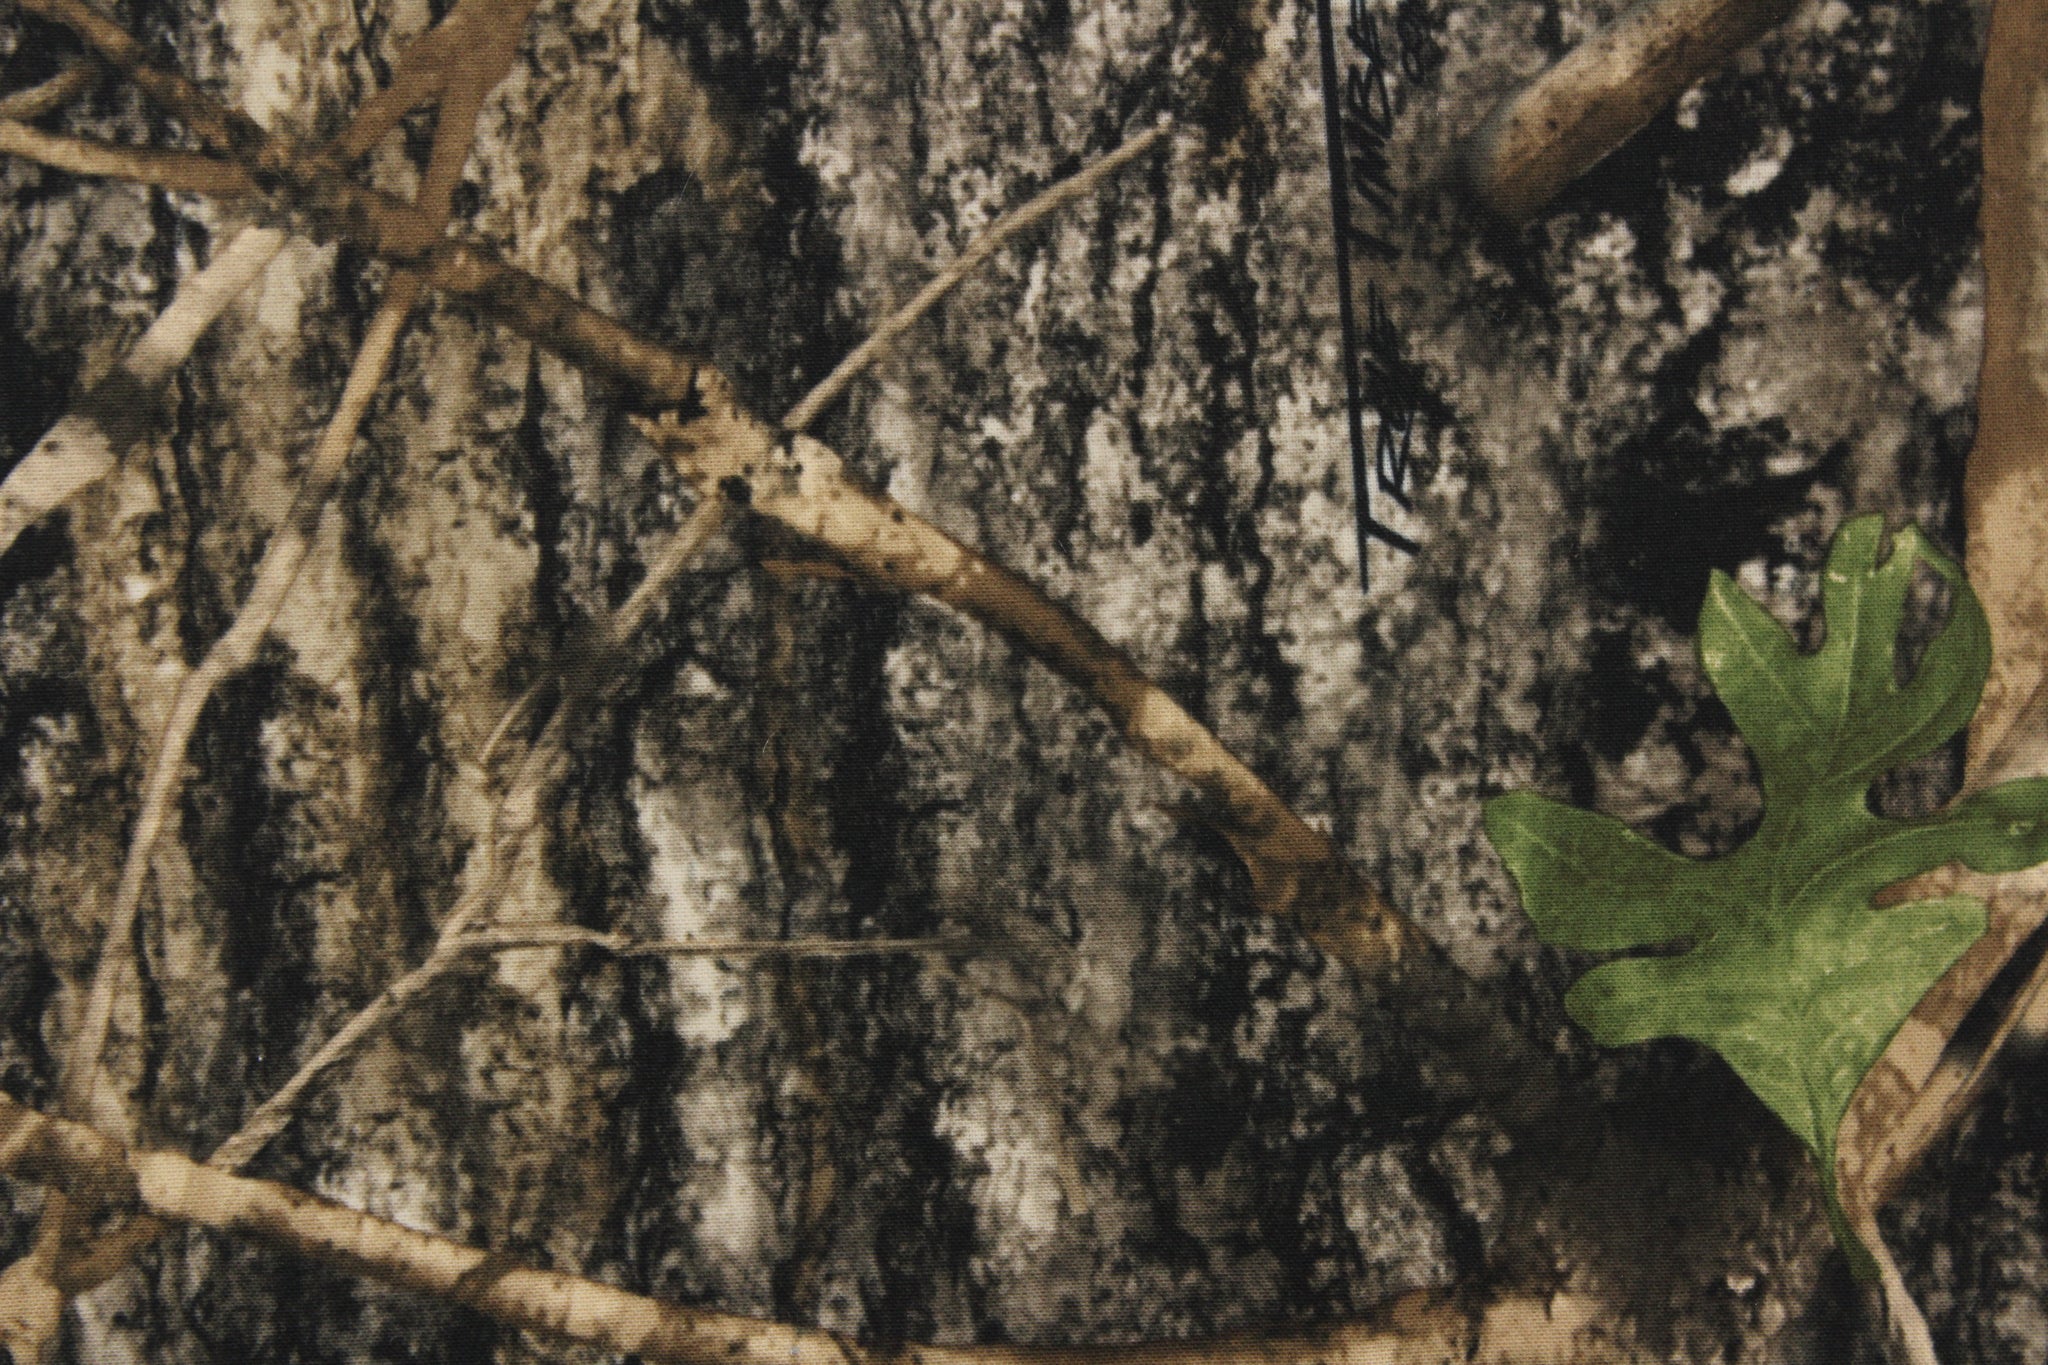 mossy oak breakup camo wallpaper